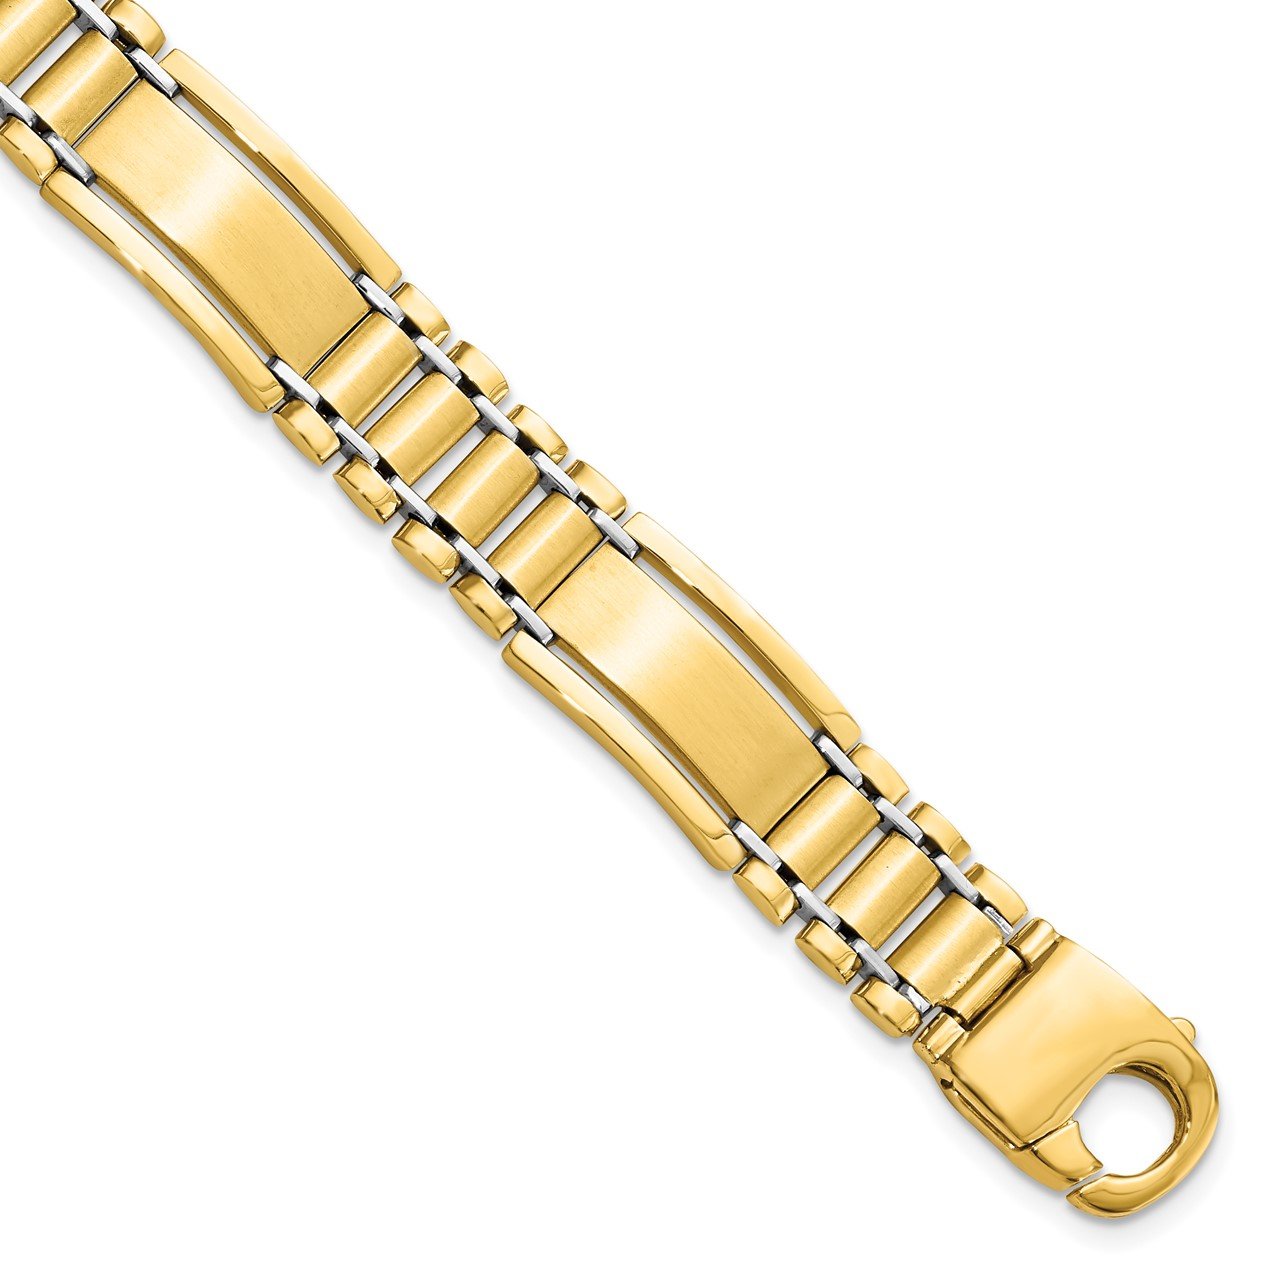 Leslie's 14K Two-Tone Polished and Satin Men's Bracelet